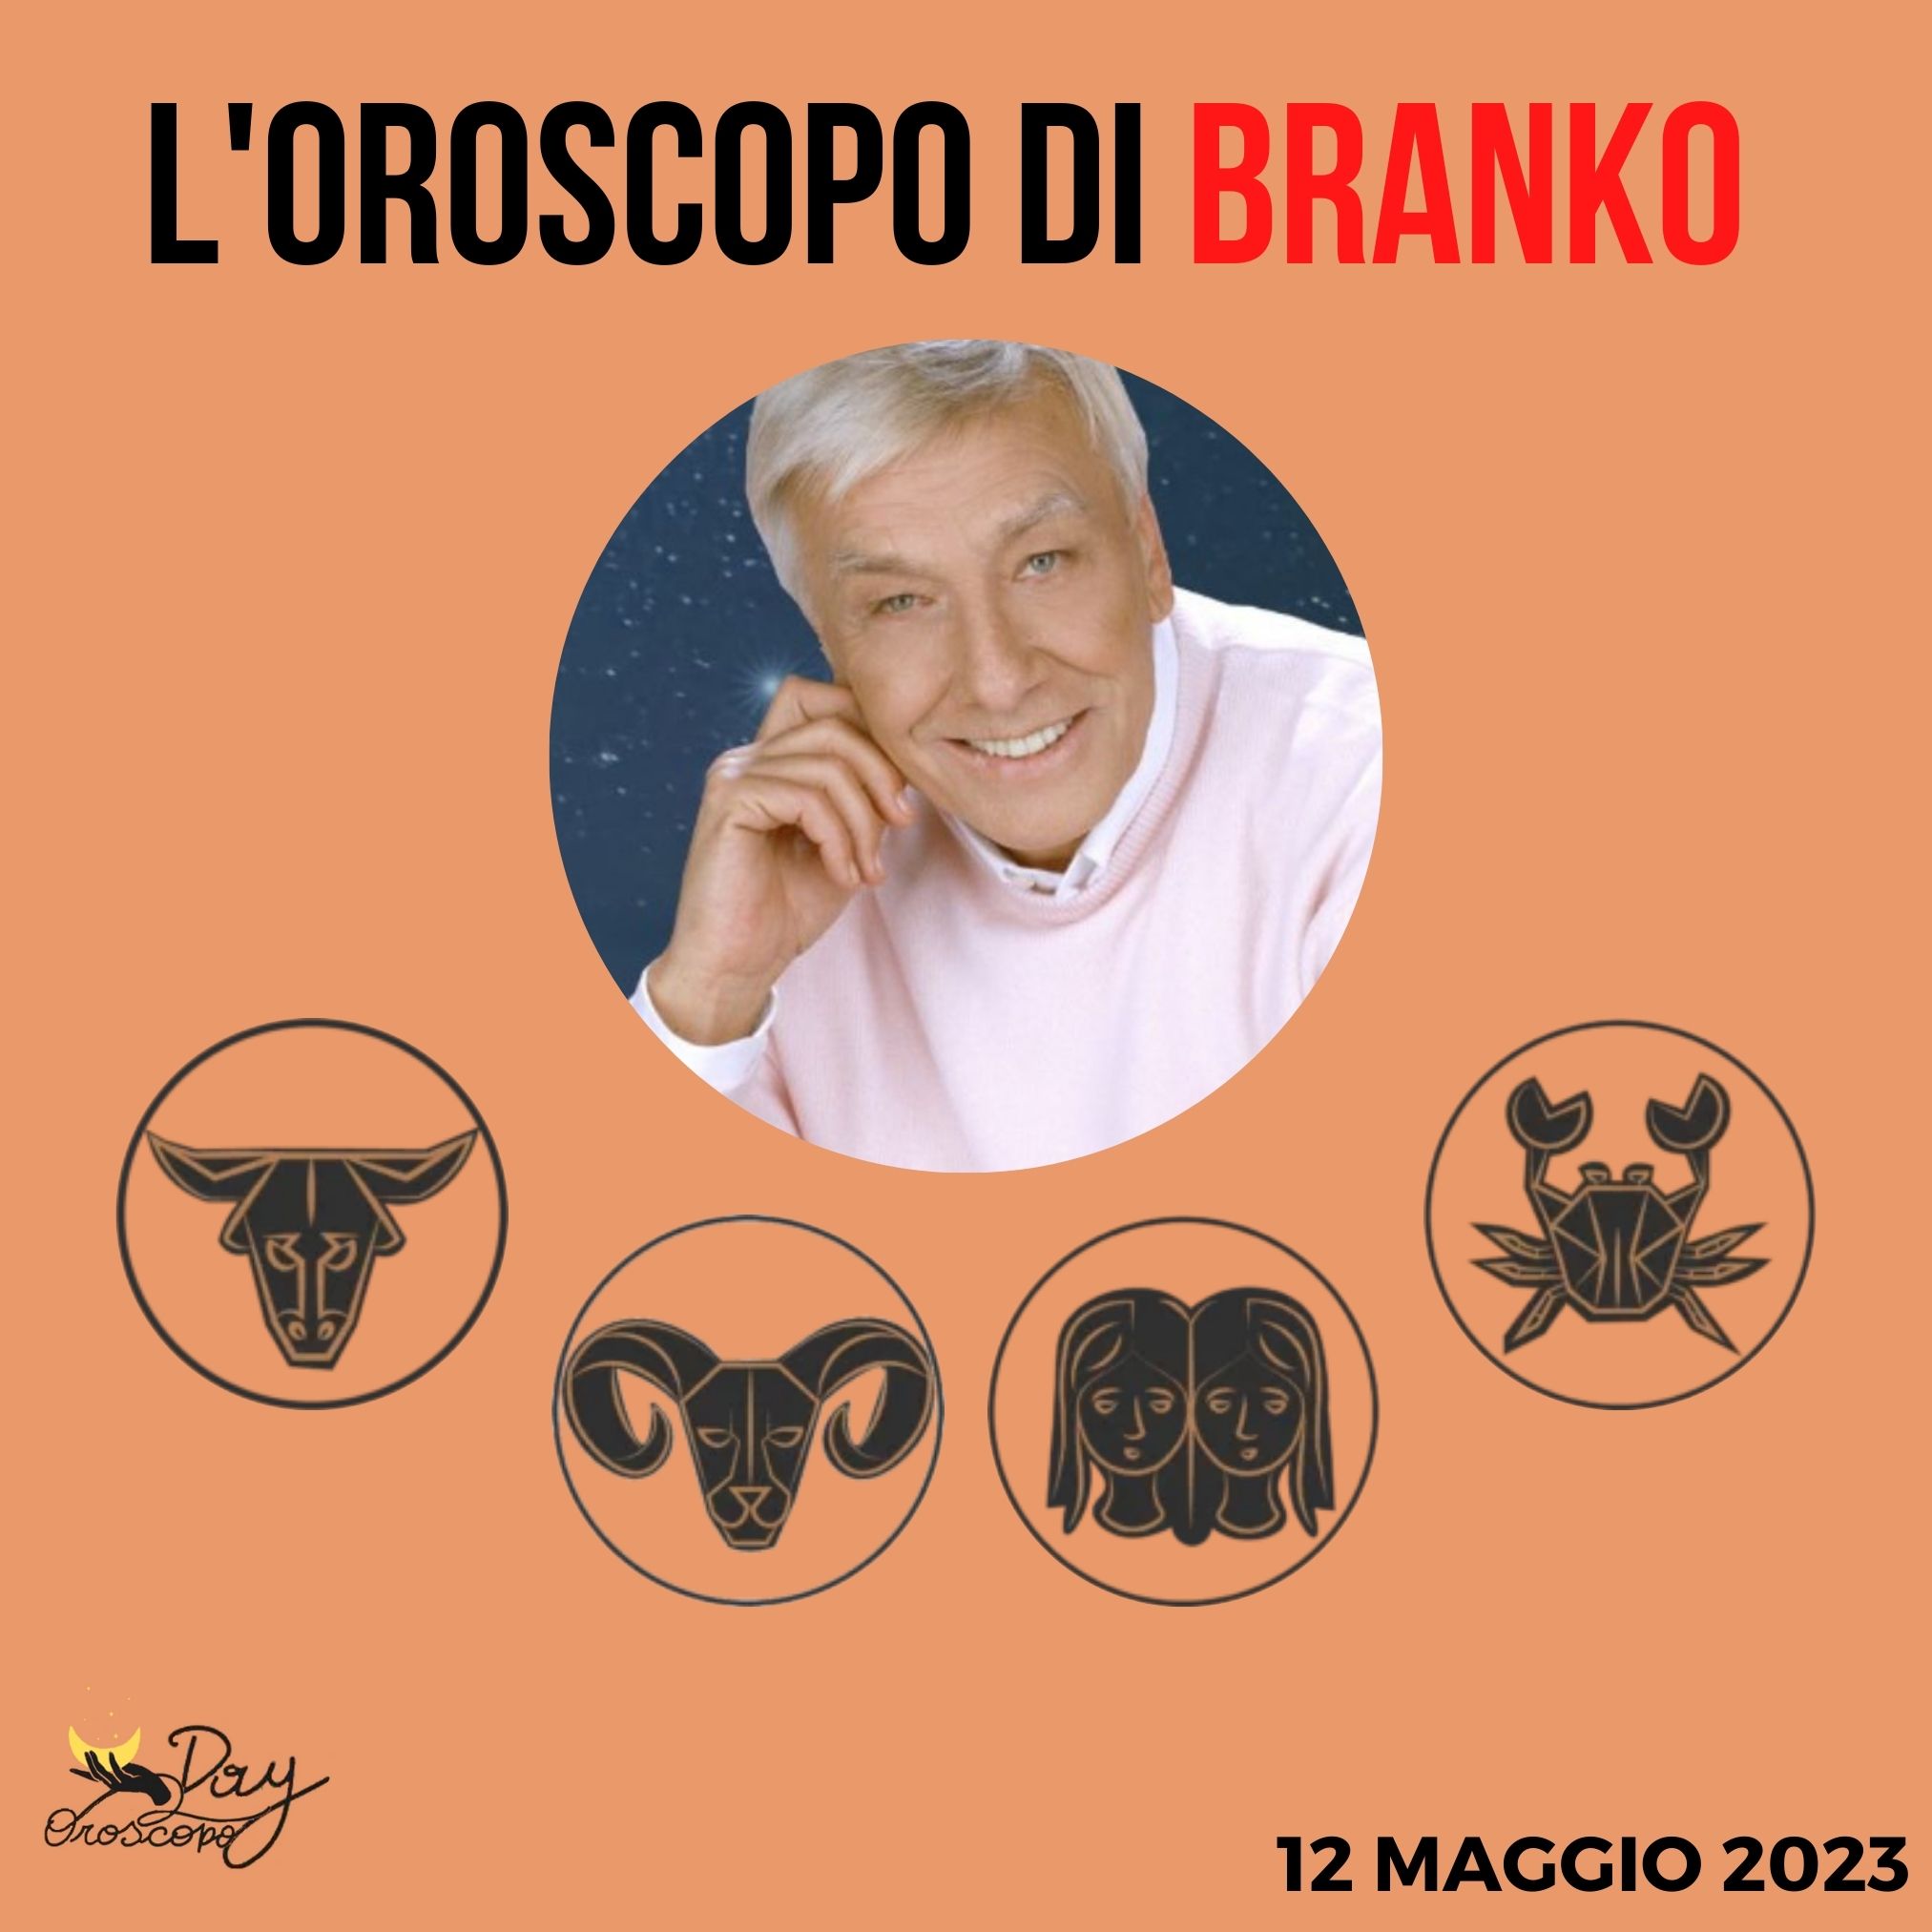 Oroscopo oggi domani Branko 12 maggio Toro Ariete Gemelli Cancro